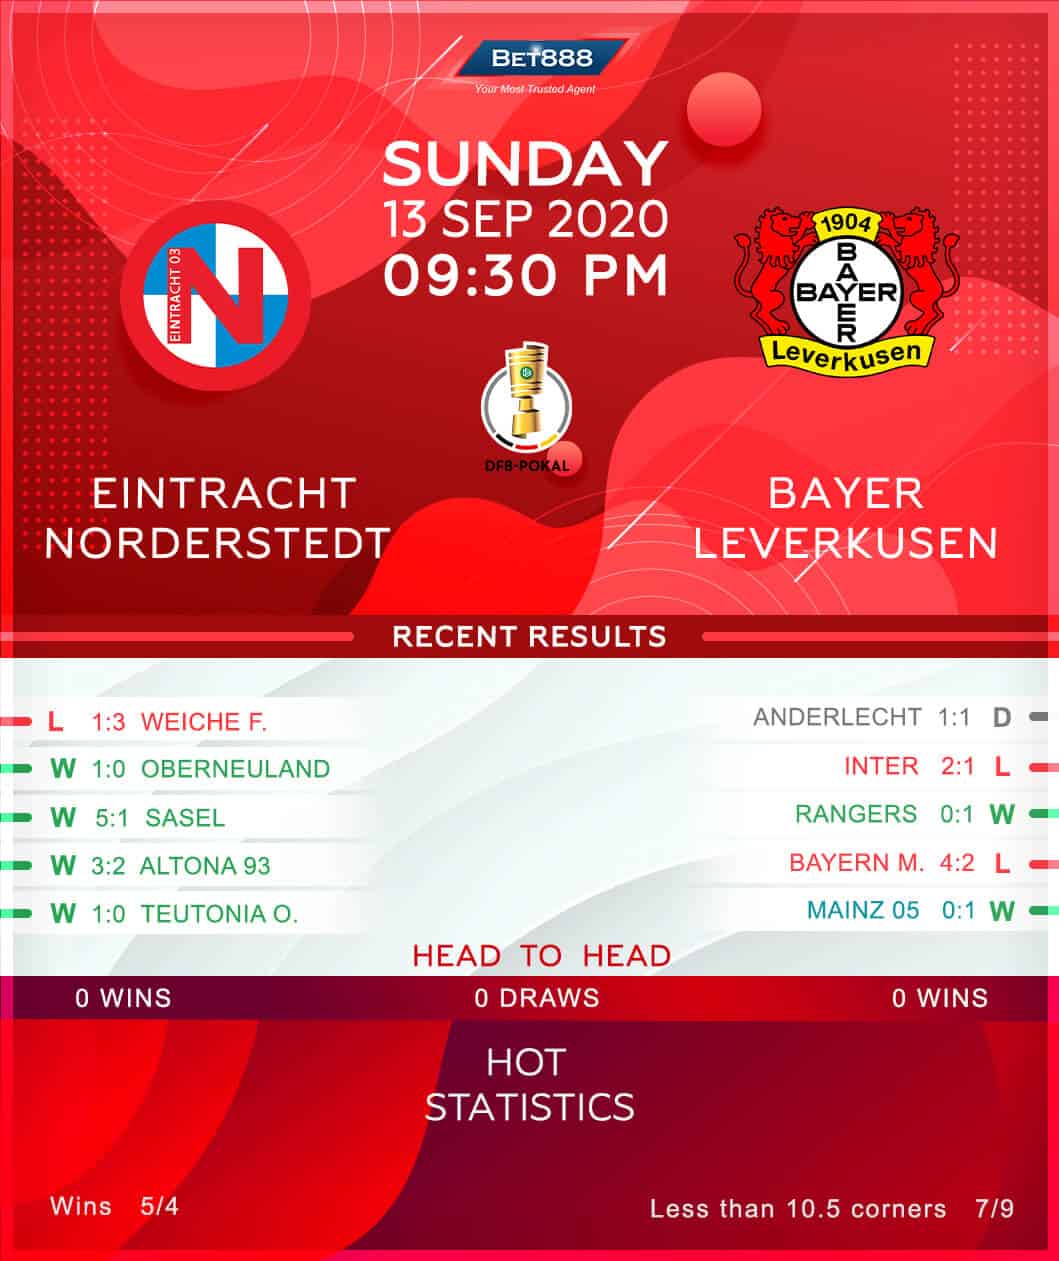 Eintracht Norderstedt vs Bayer Leverkusen 13/09/20